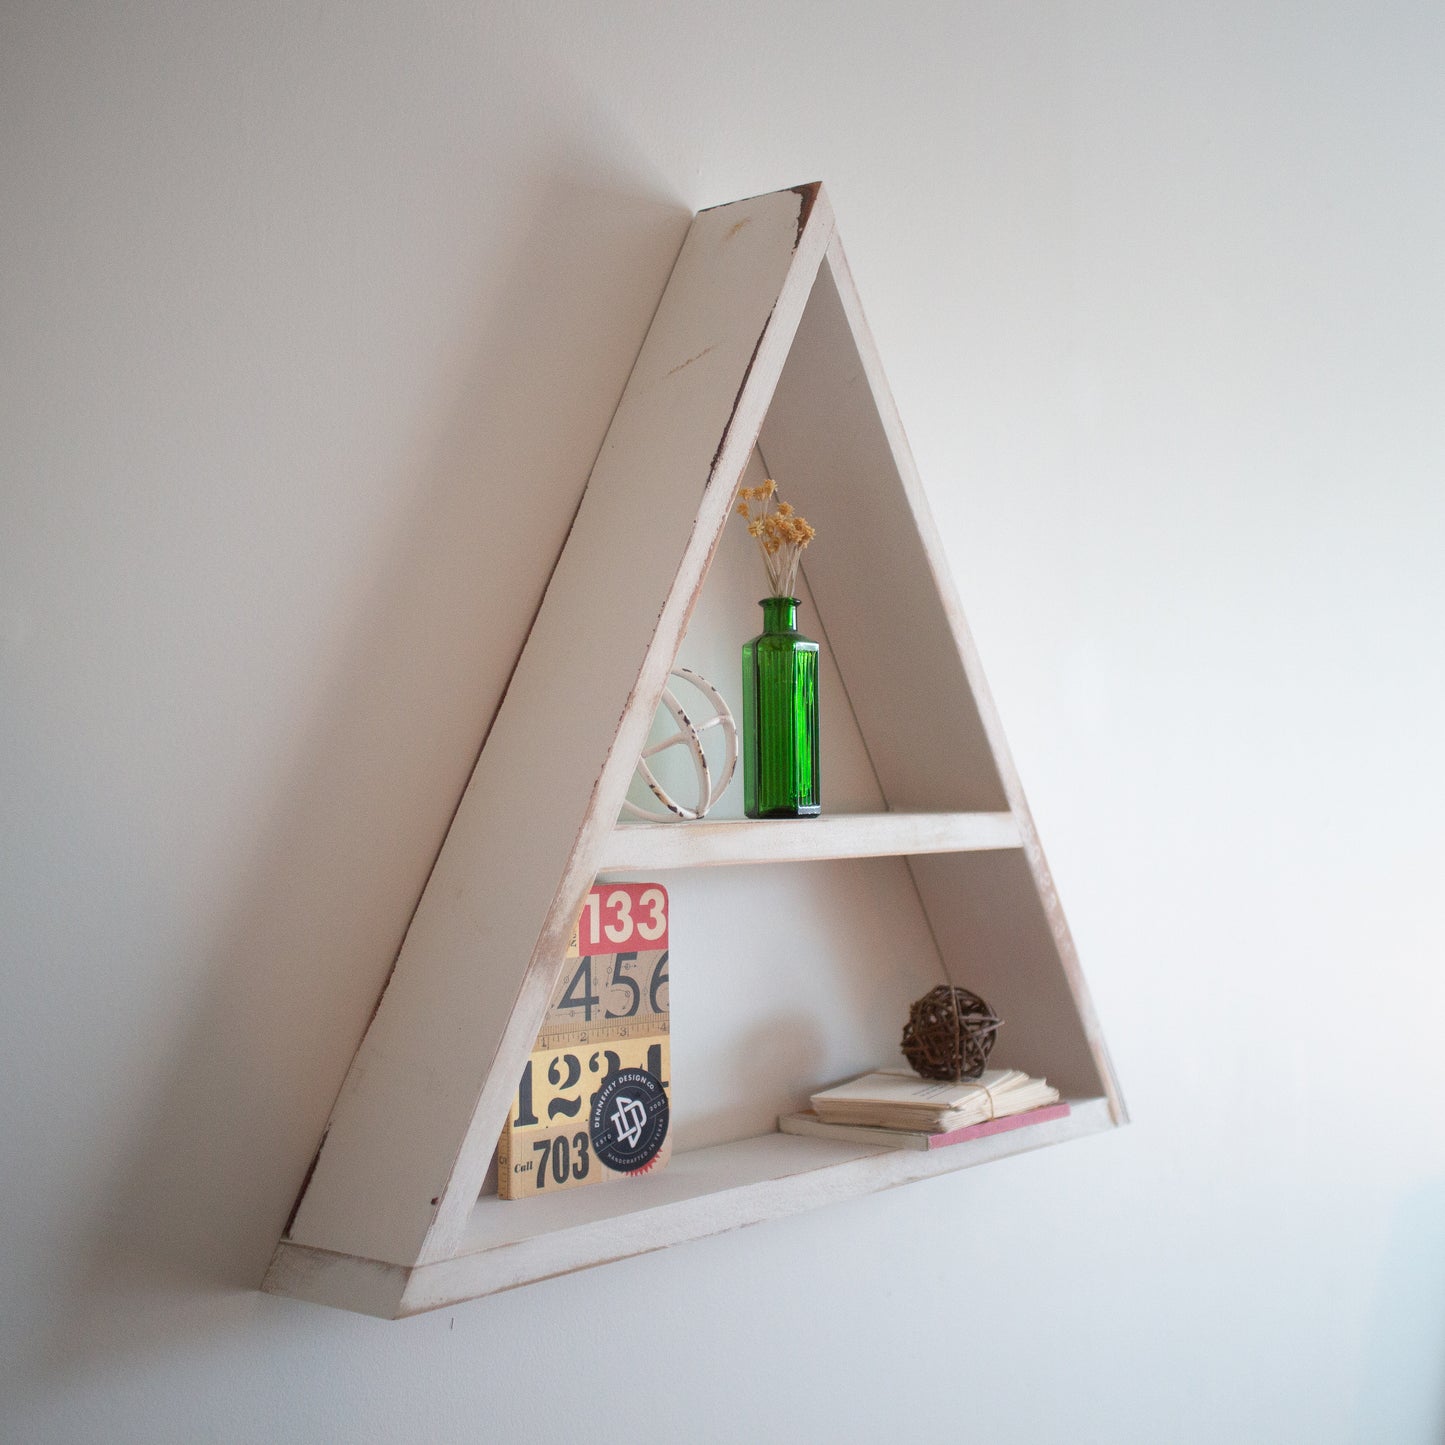 DIY Triangle Shelves